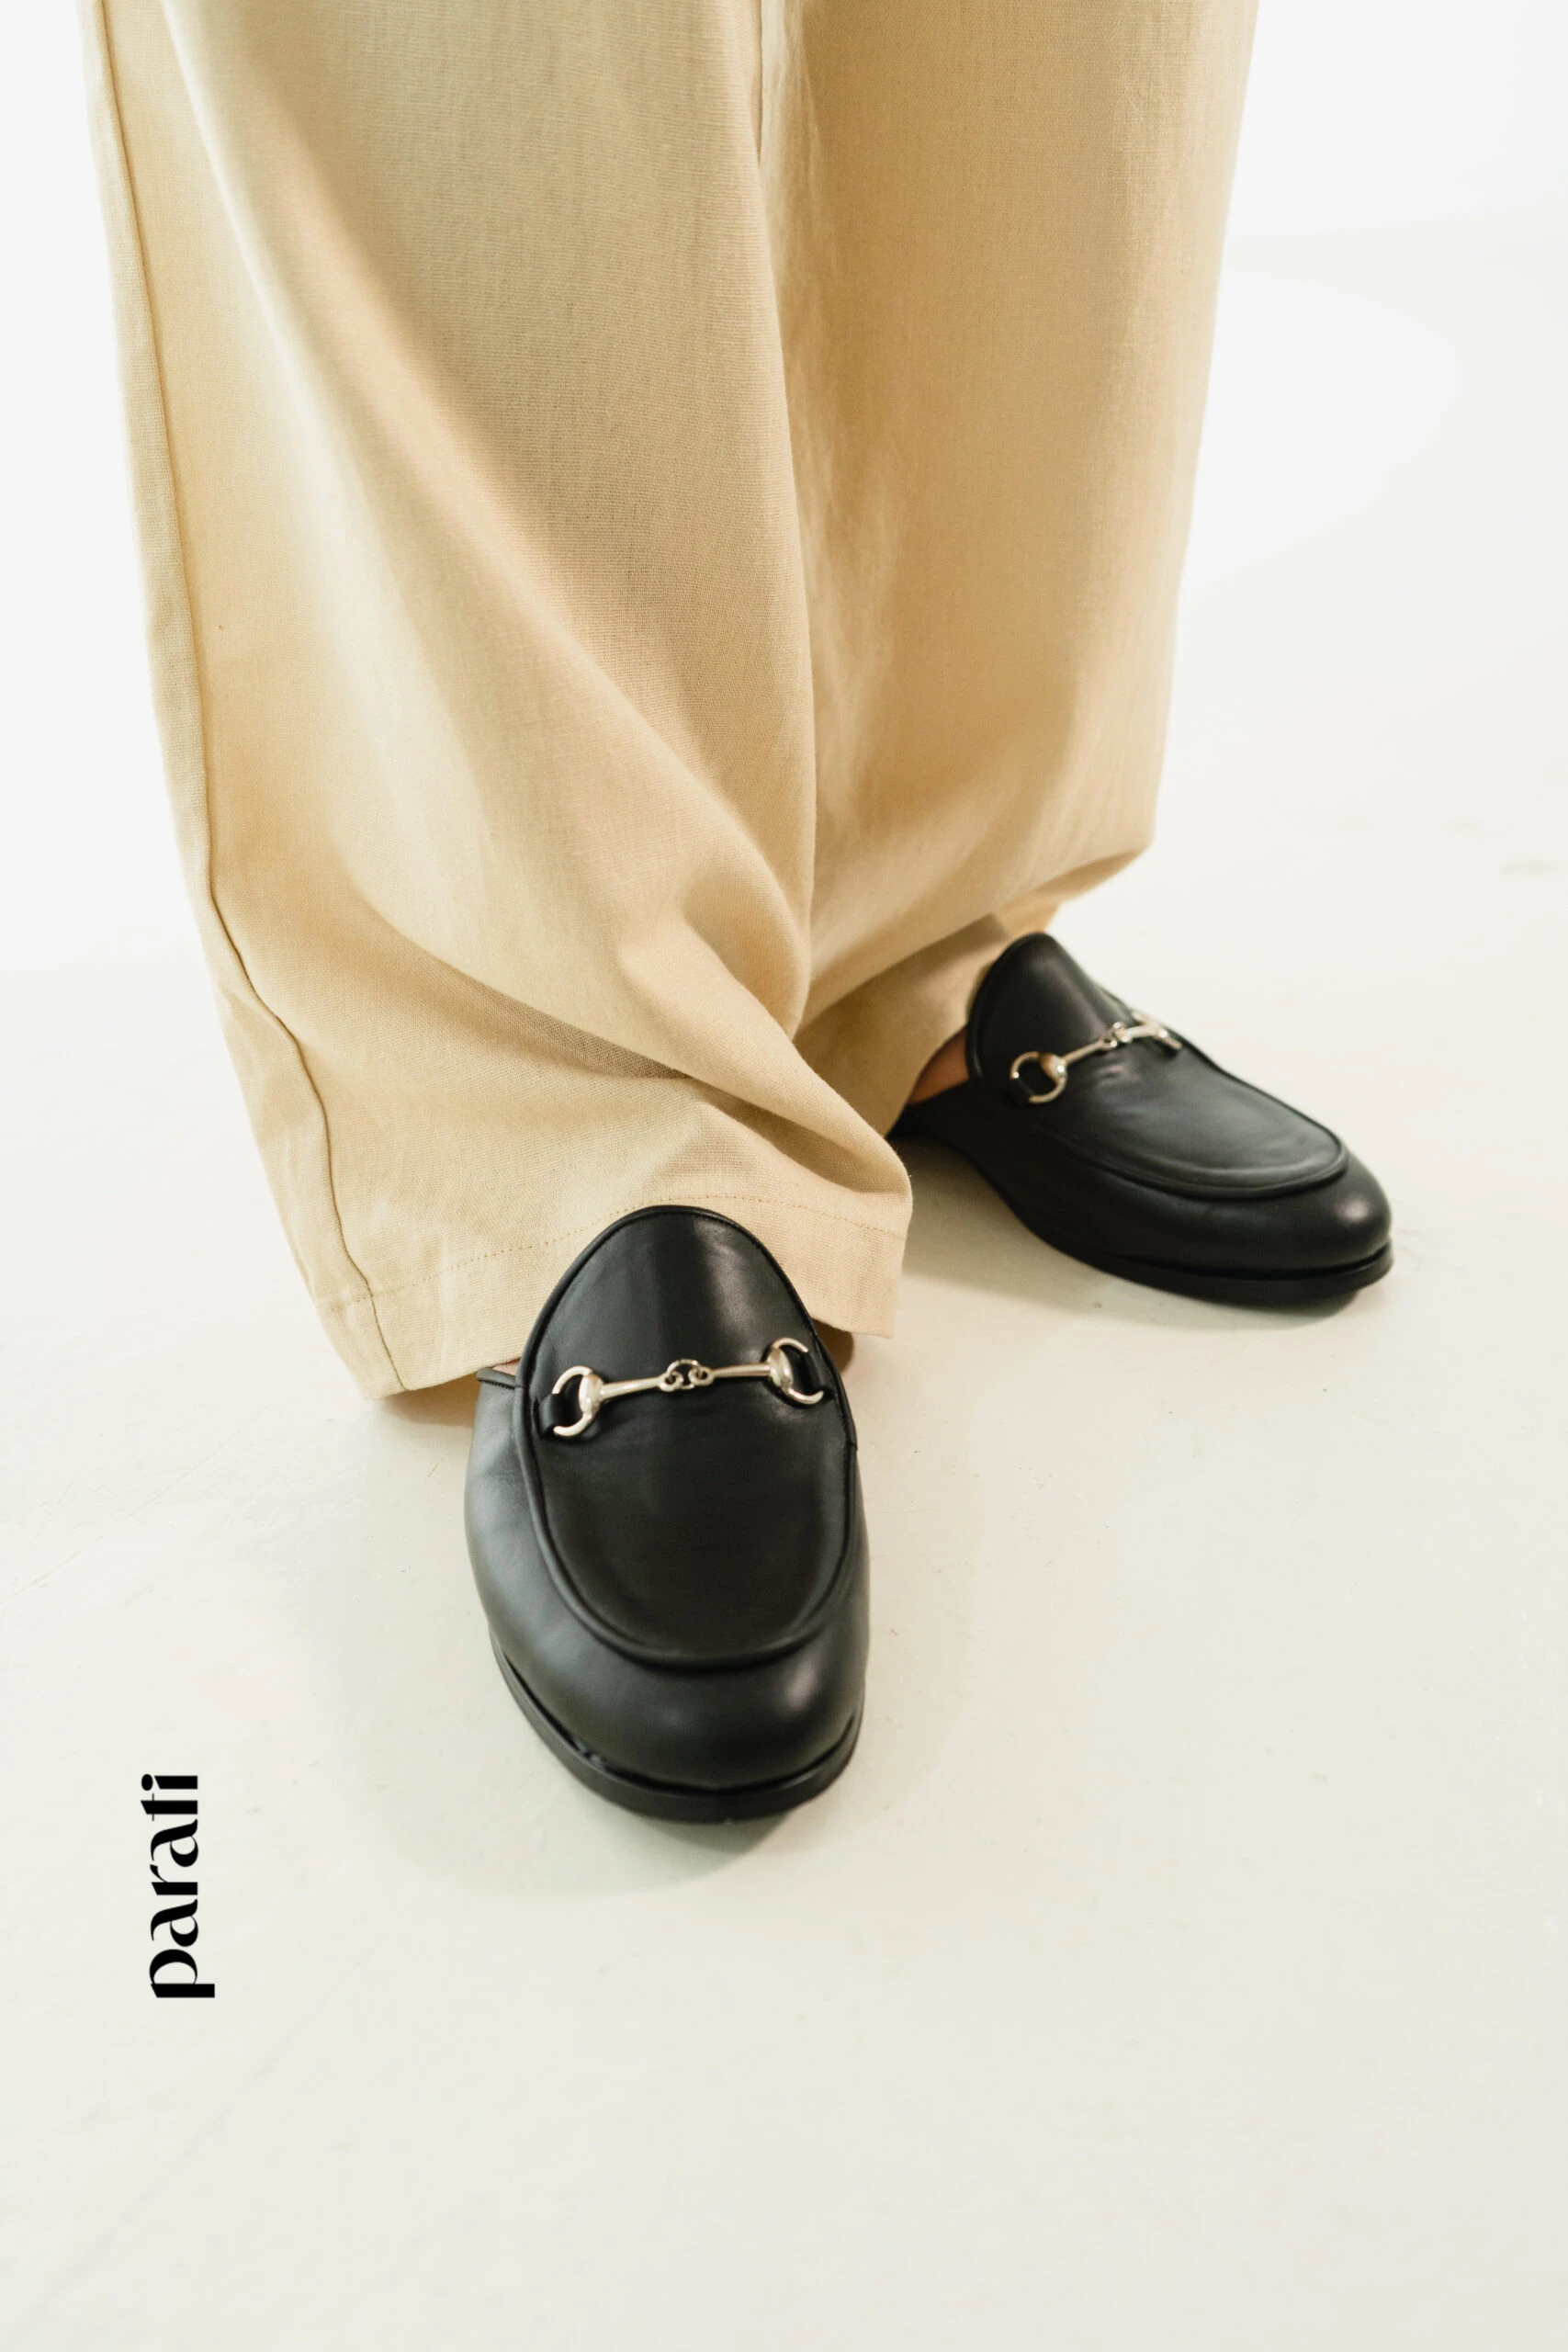 Moda práctica: pantalón de lino